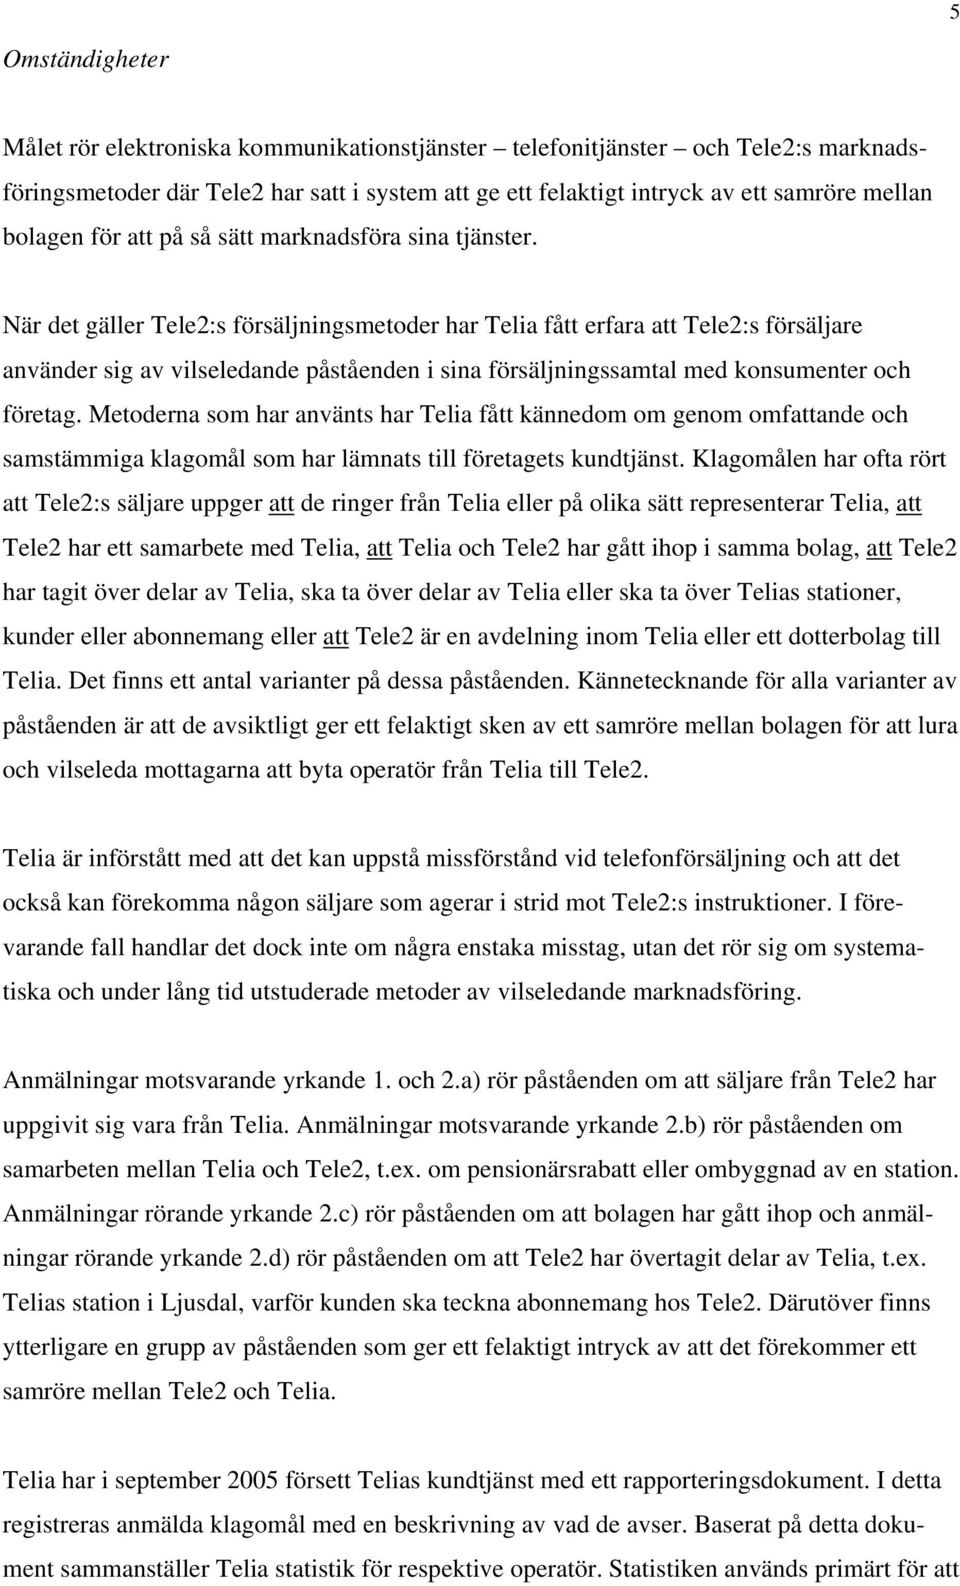 När det gäller Tele2:s försäljningsmetoder har Telia fått erfara att Tele2:s försäljare använder sig av vilseledande påståenden i sina försäljningssamtal med konsumenter och företag.